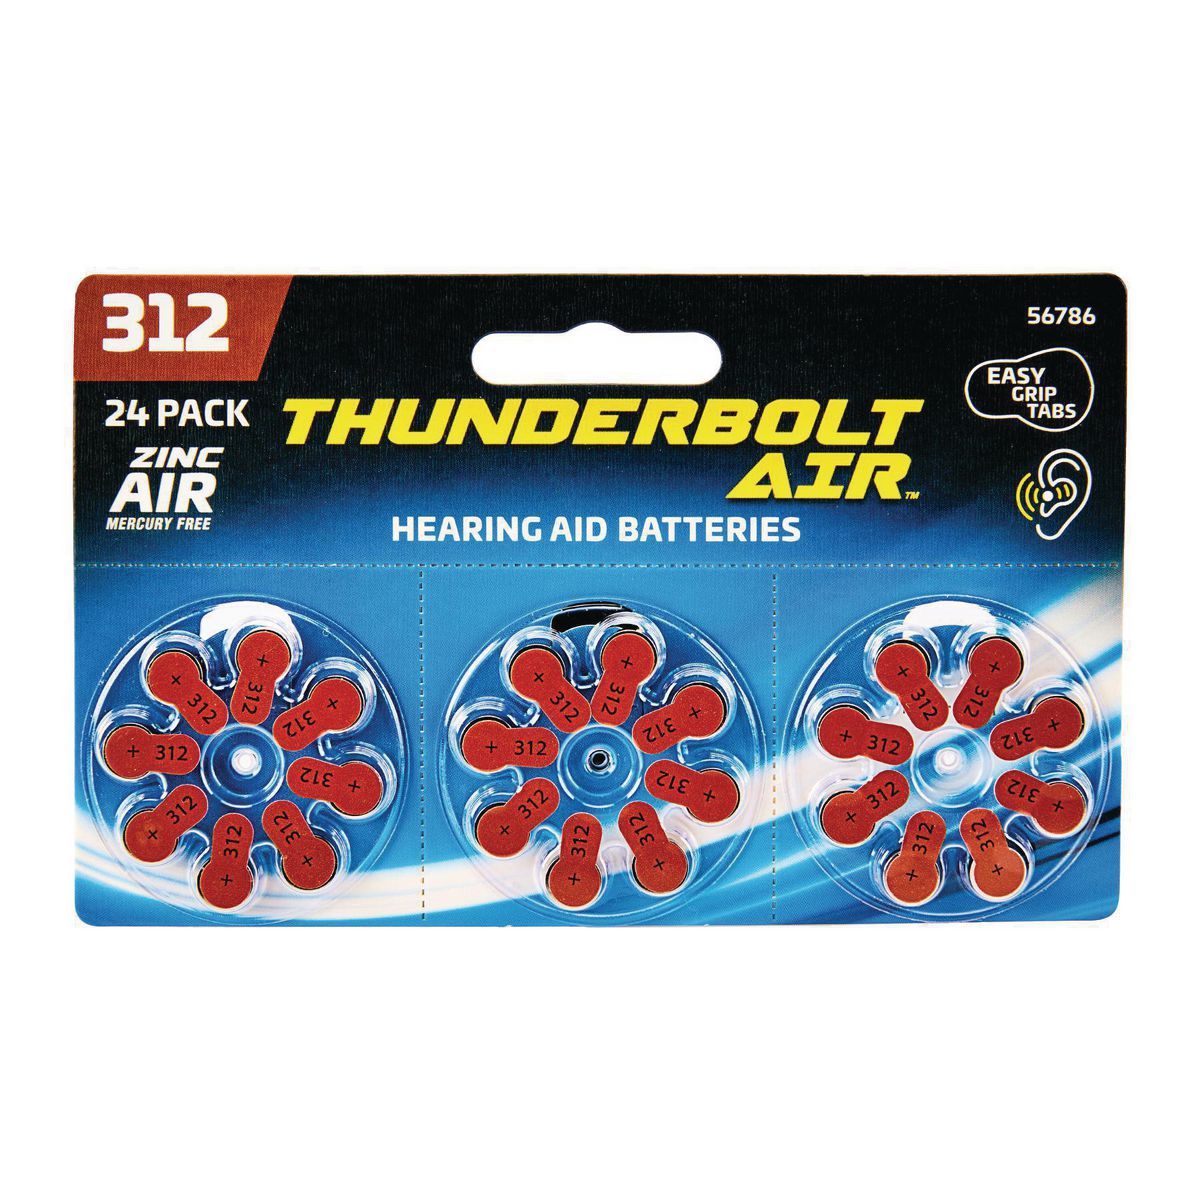 THUNDERBOLT AIR A312 Hearing Aid Batteries, 24 Pack